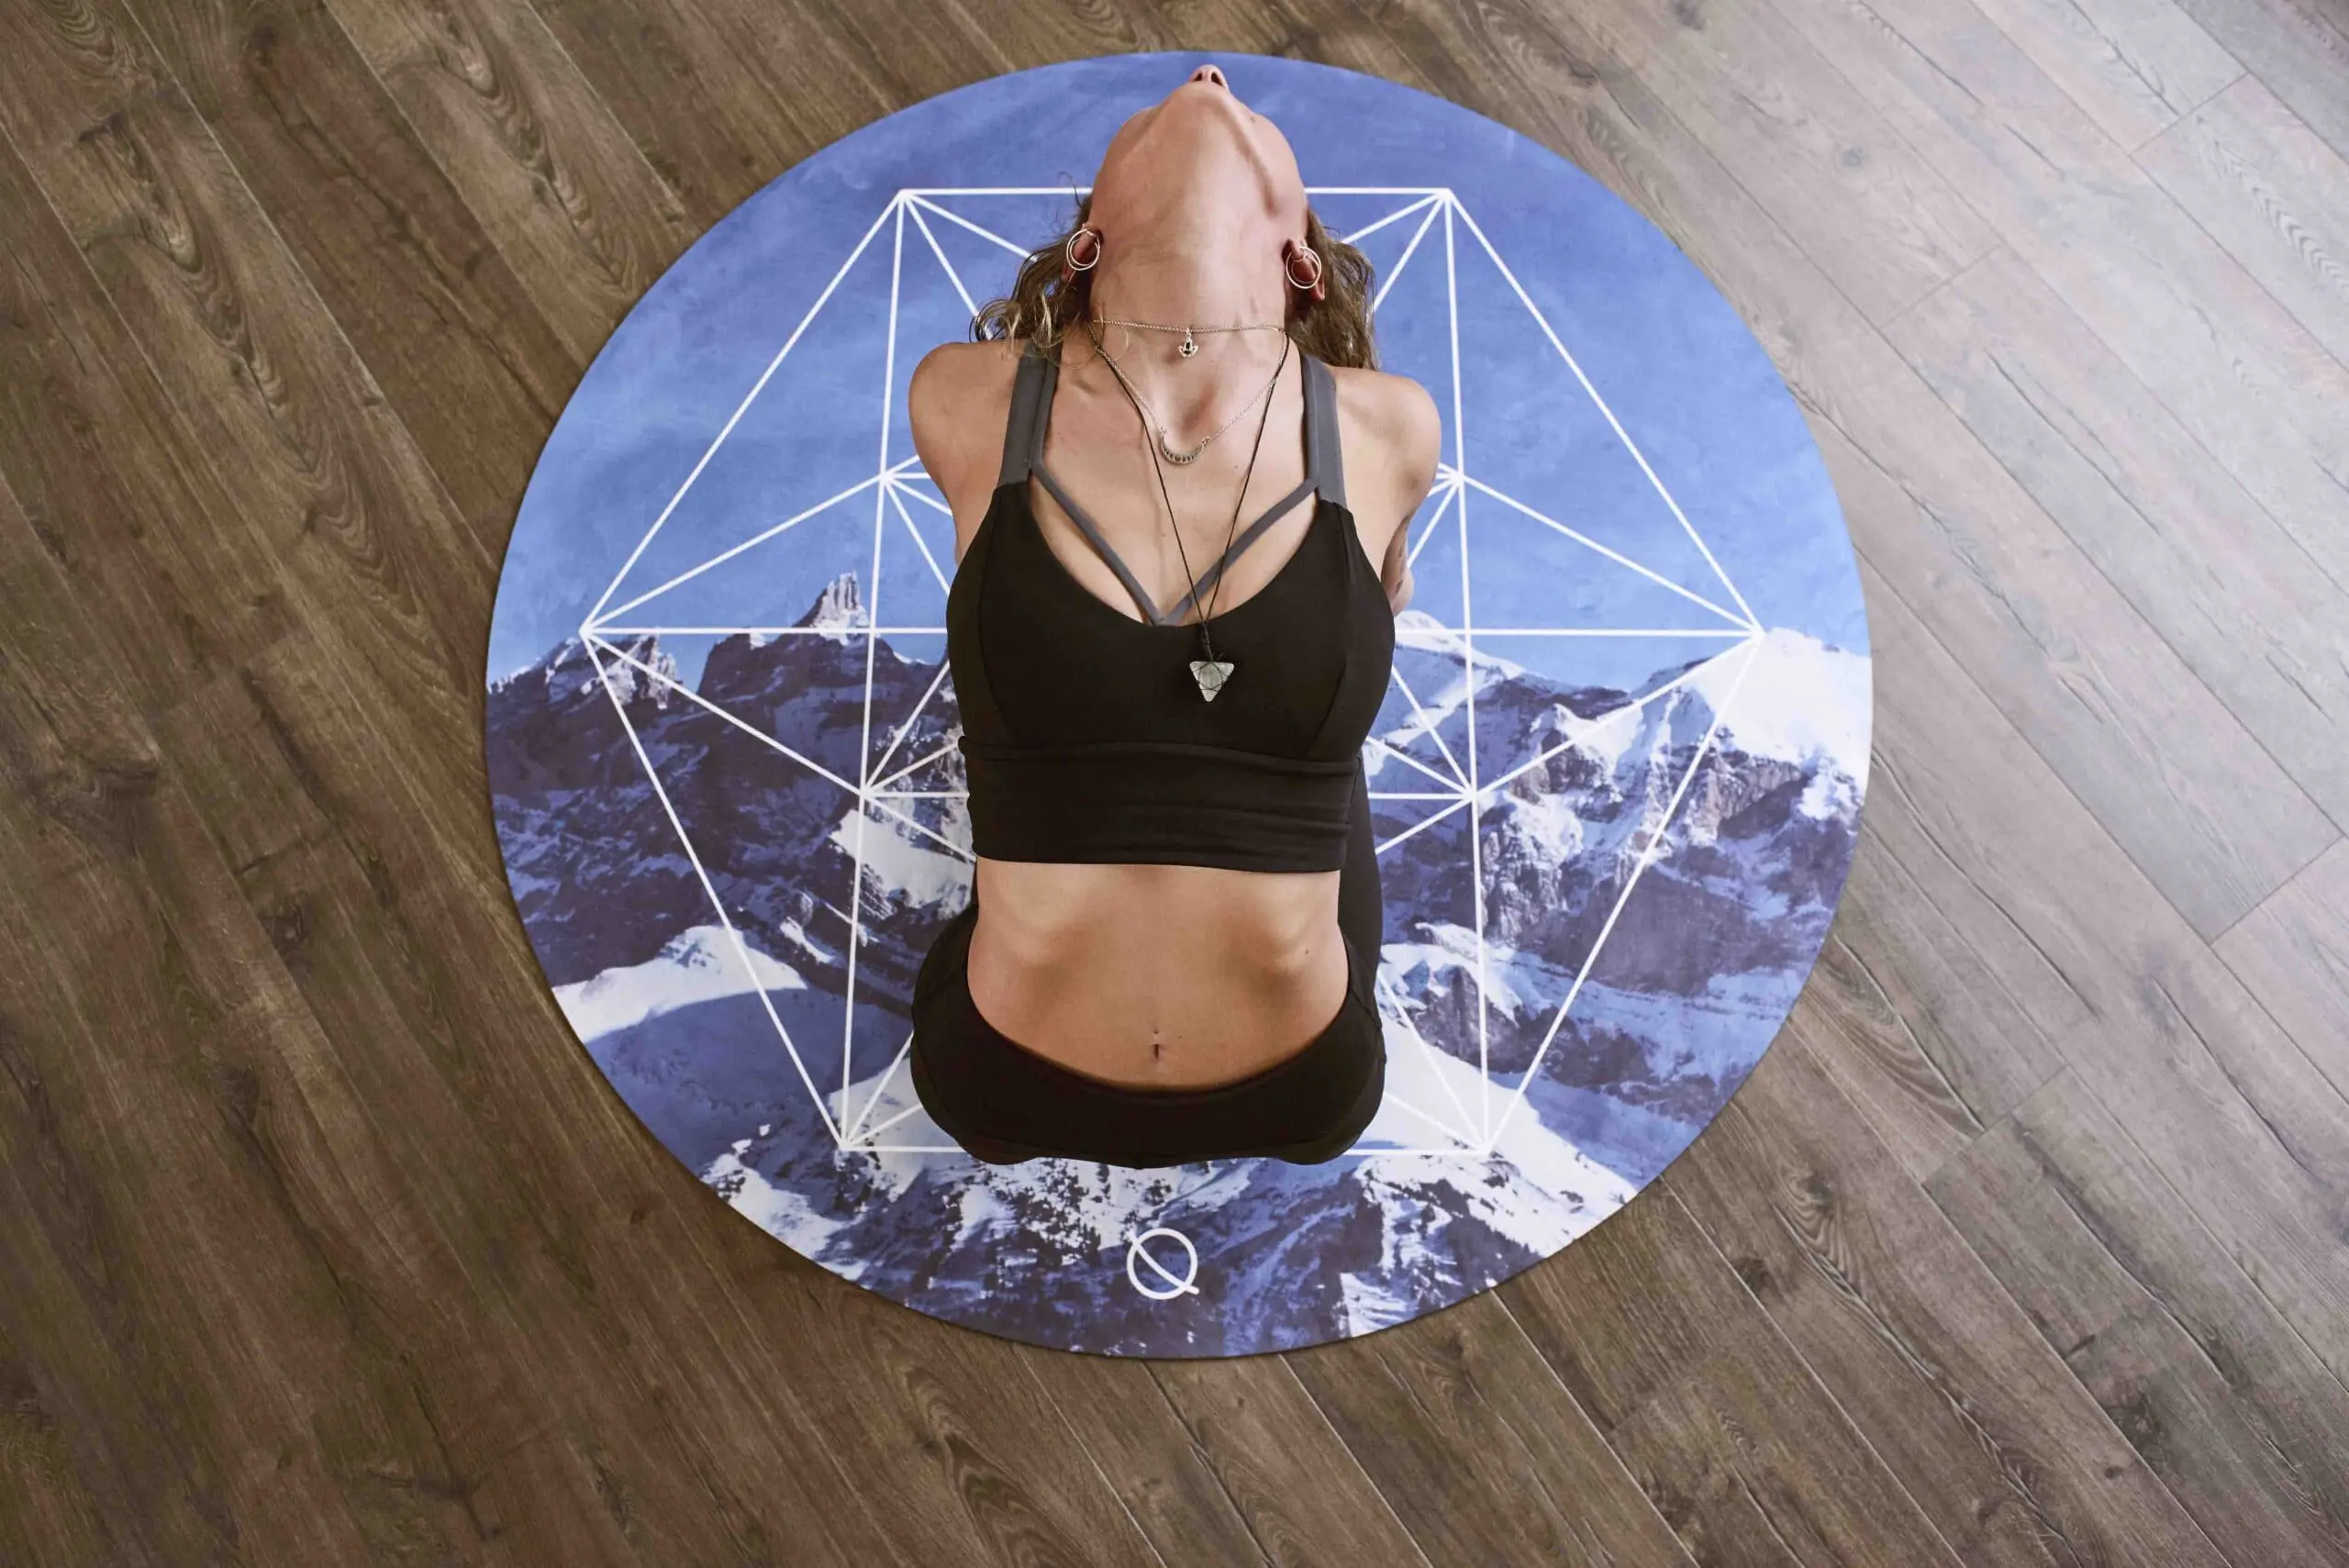 Form yoga mat scaled